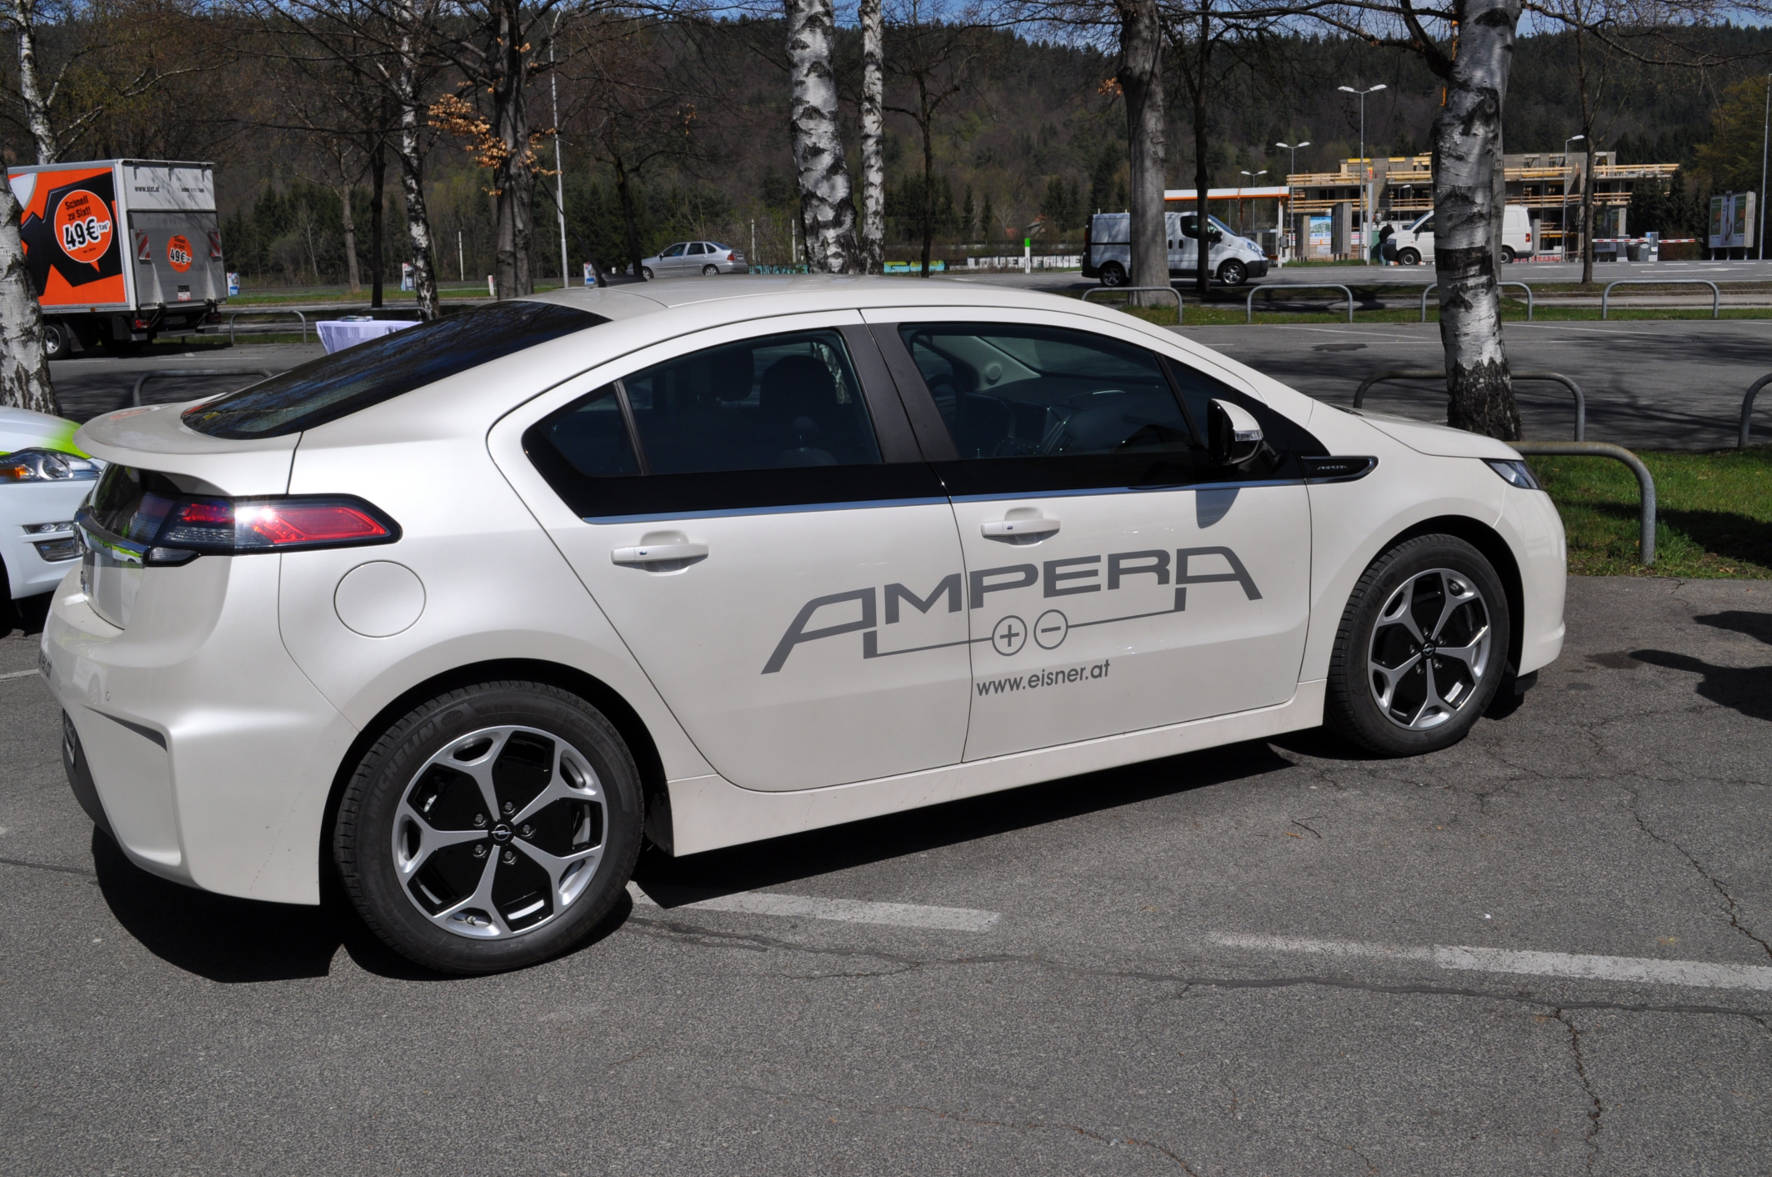 Der Opel Ampera ist ein Full-Hybrid-Fahrzeug, das sowohl bis zu 80 km rein elektrisch als auch beliebig weit durch eigene Erzeugung elektrischer Energie mithilfe eines Verbrennungsmotors unterwegs sein kann.